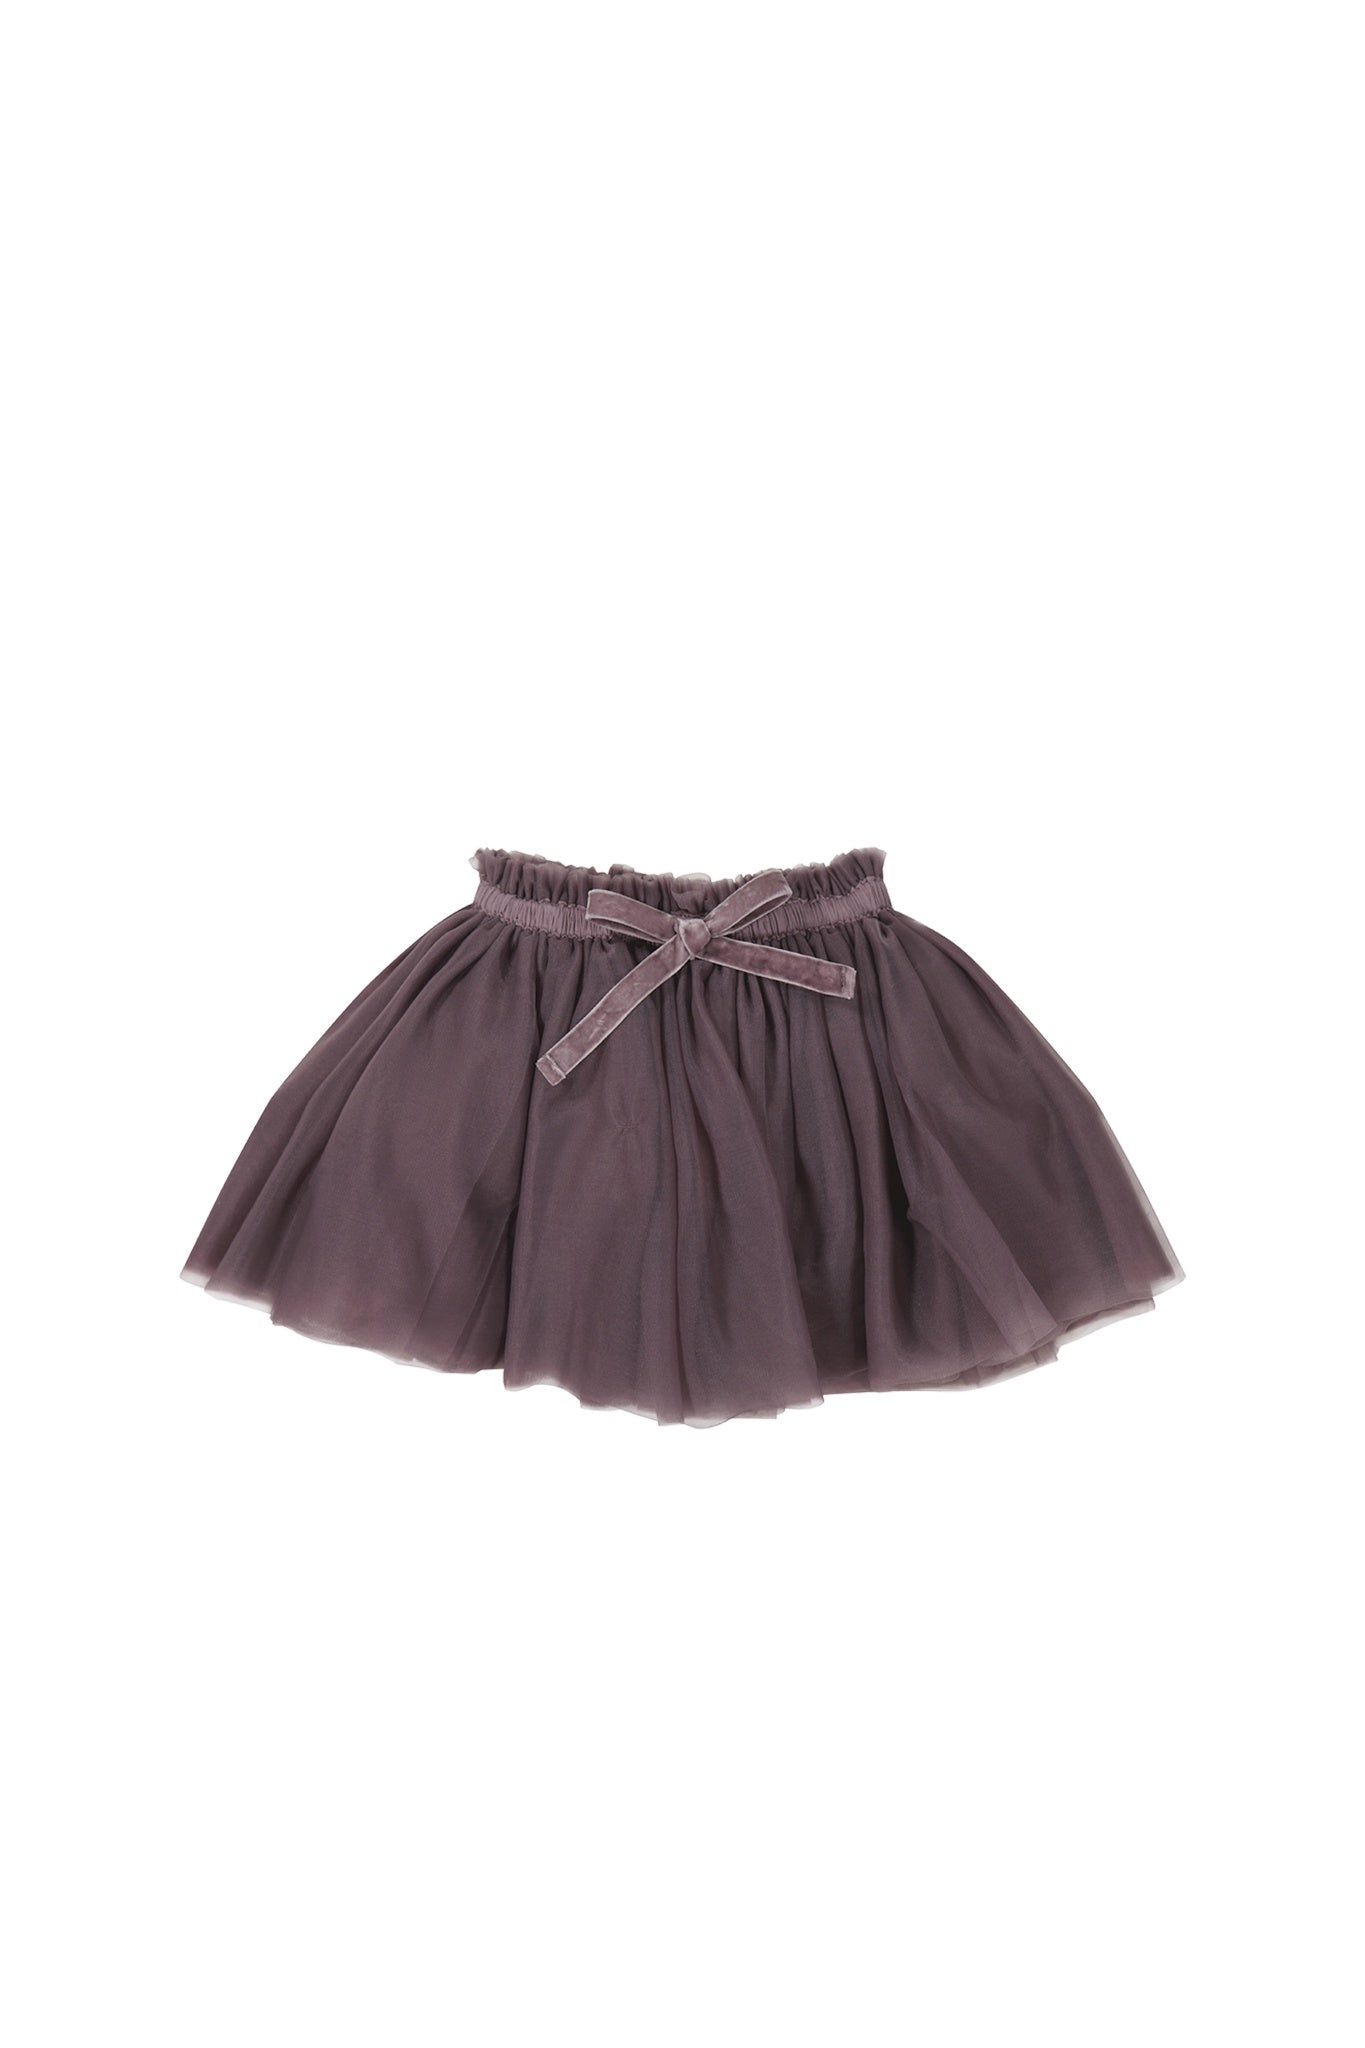 Classic Tutu Skirt - Twilight | Jamie Kay